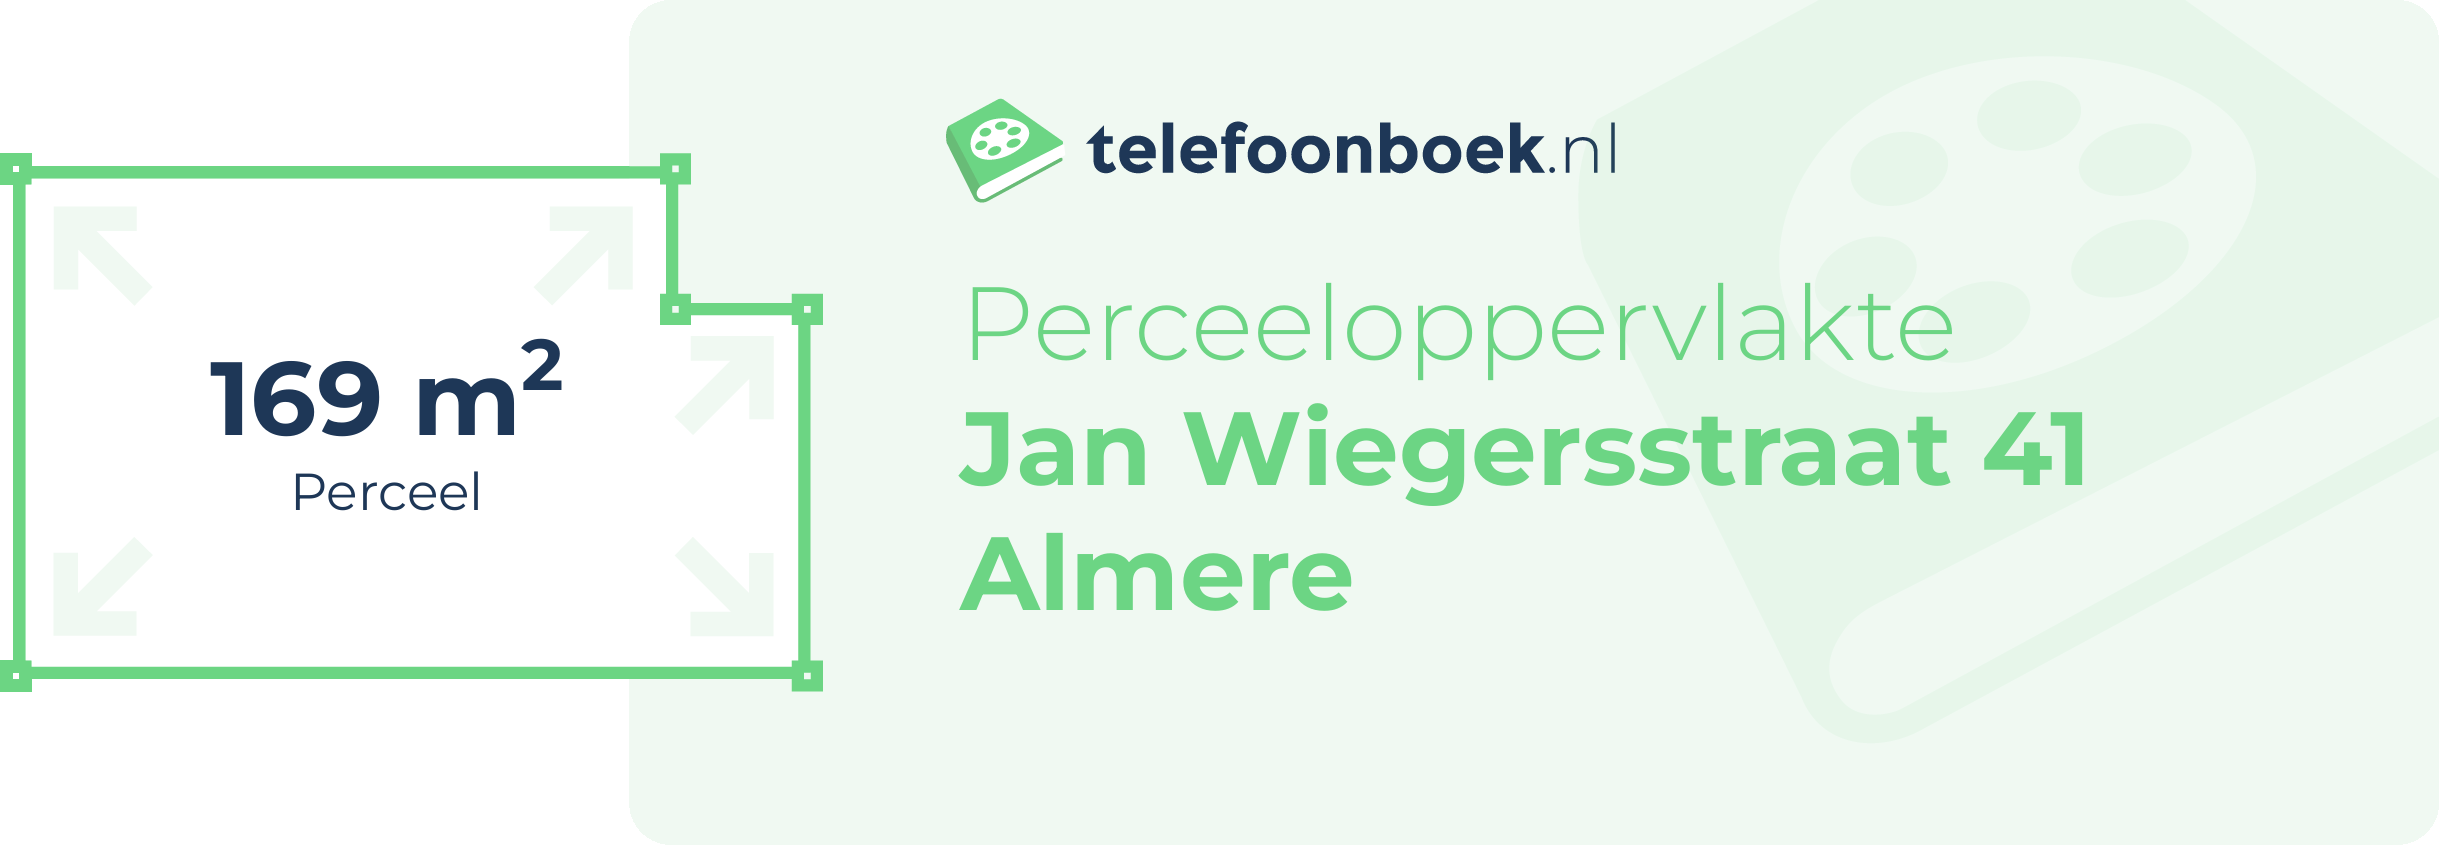 Perceeloppervlakte Jan Wiegersstraat 41 Almere